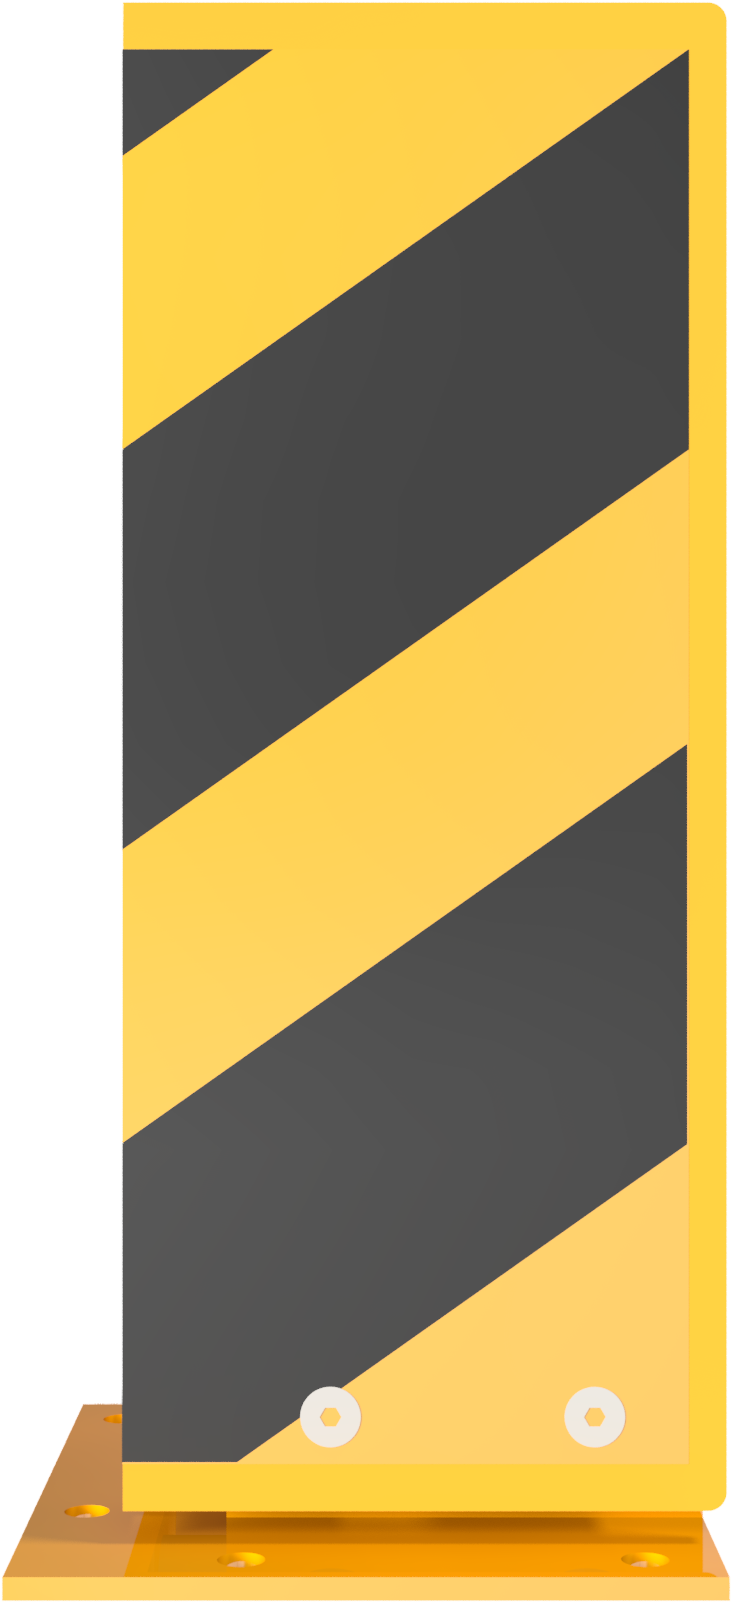 Anfahrschutz 'Solid' aus Stahl, neigbar, gelb/schwarz, Höhe 400 mm